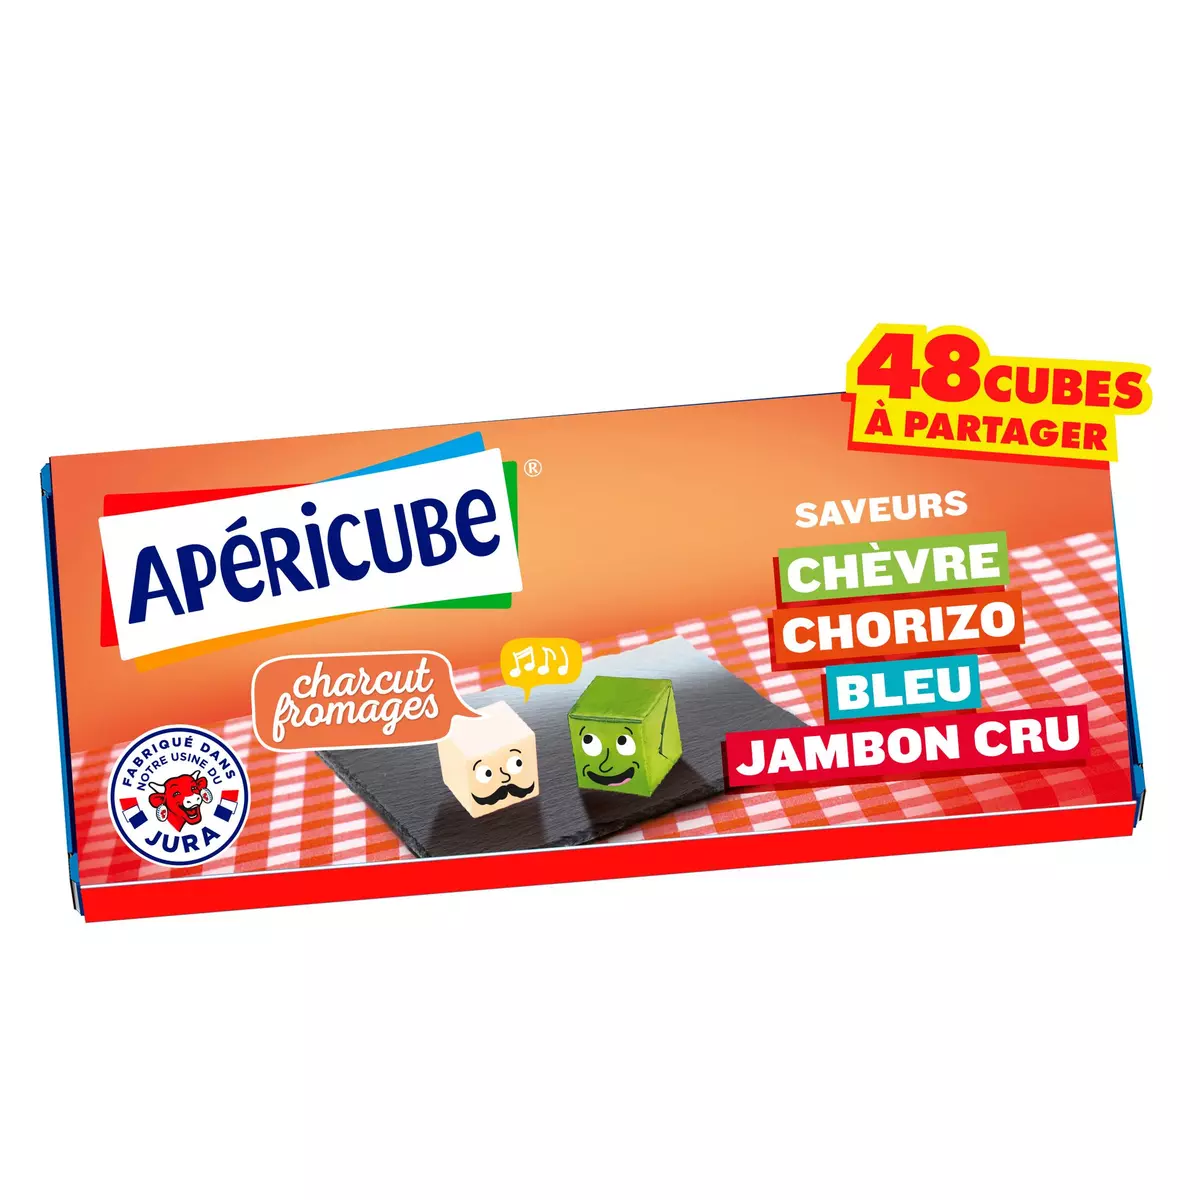 APERICUBE Cubes de fromage apéritif Charcut' Fromages 48 cubes 250g